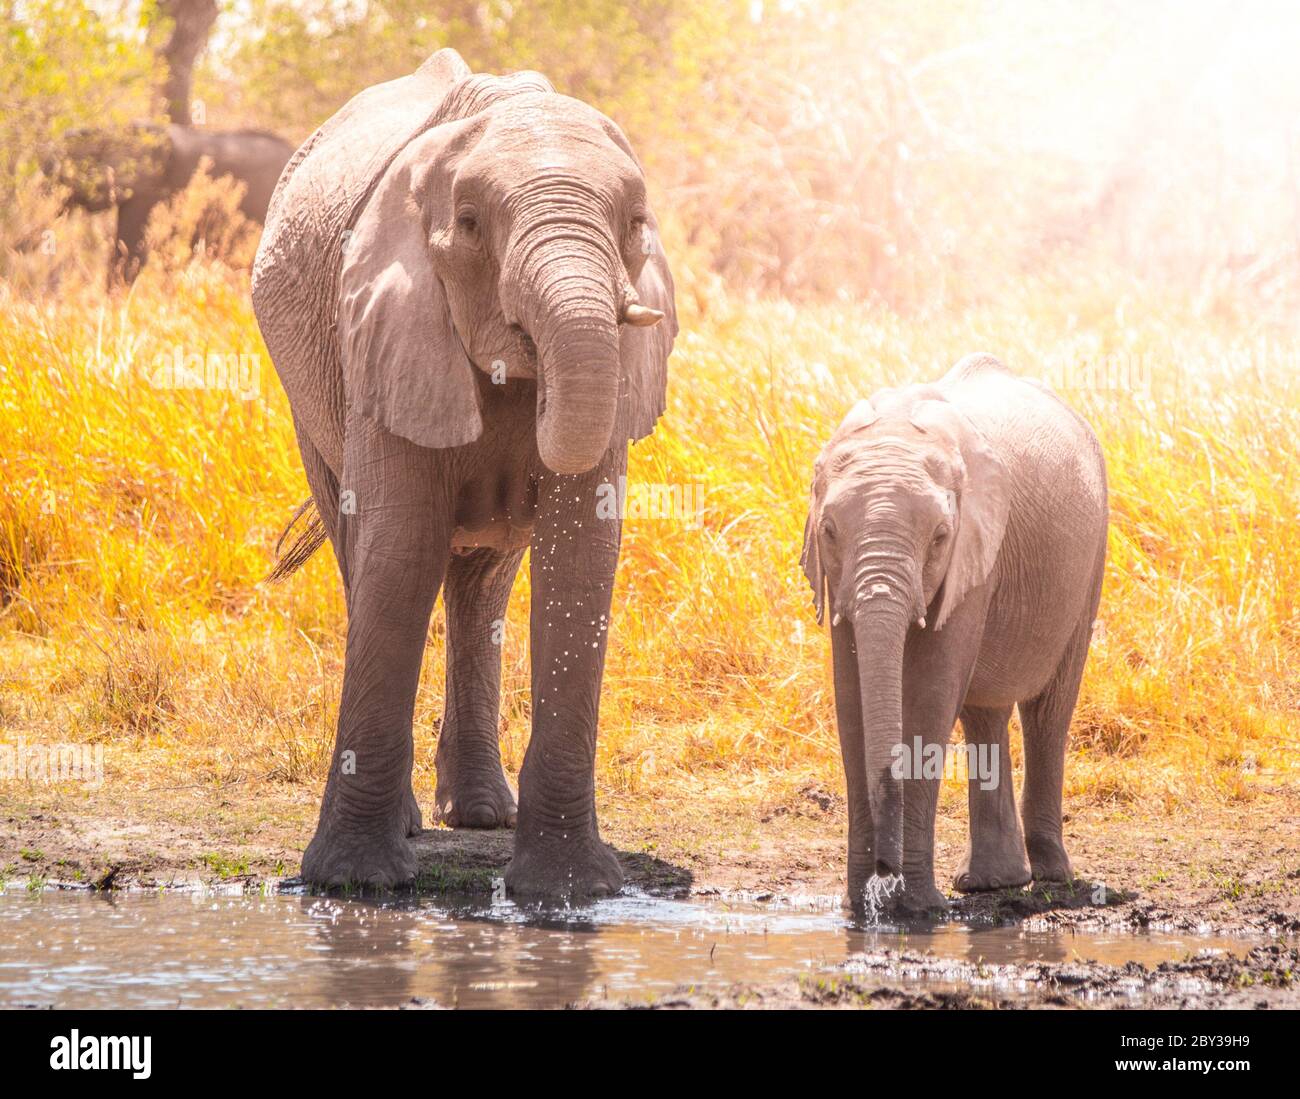 Des éléphants africains assoiffés buvant de l'eau au trou d'eau. Réserve de gibier de Moremi, région d'Okavango, Botswana. Banque D'Images